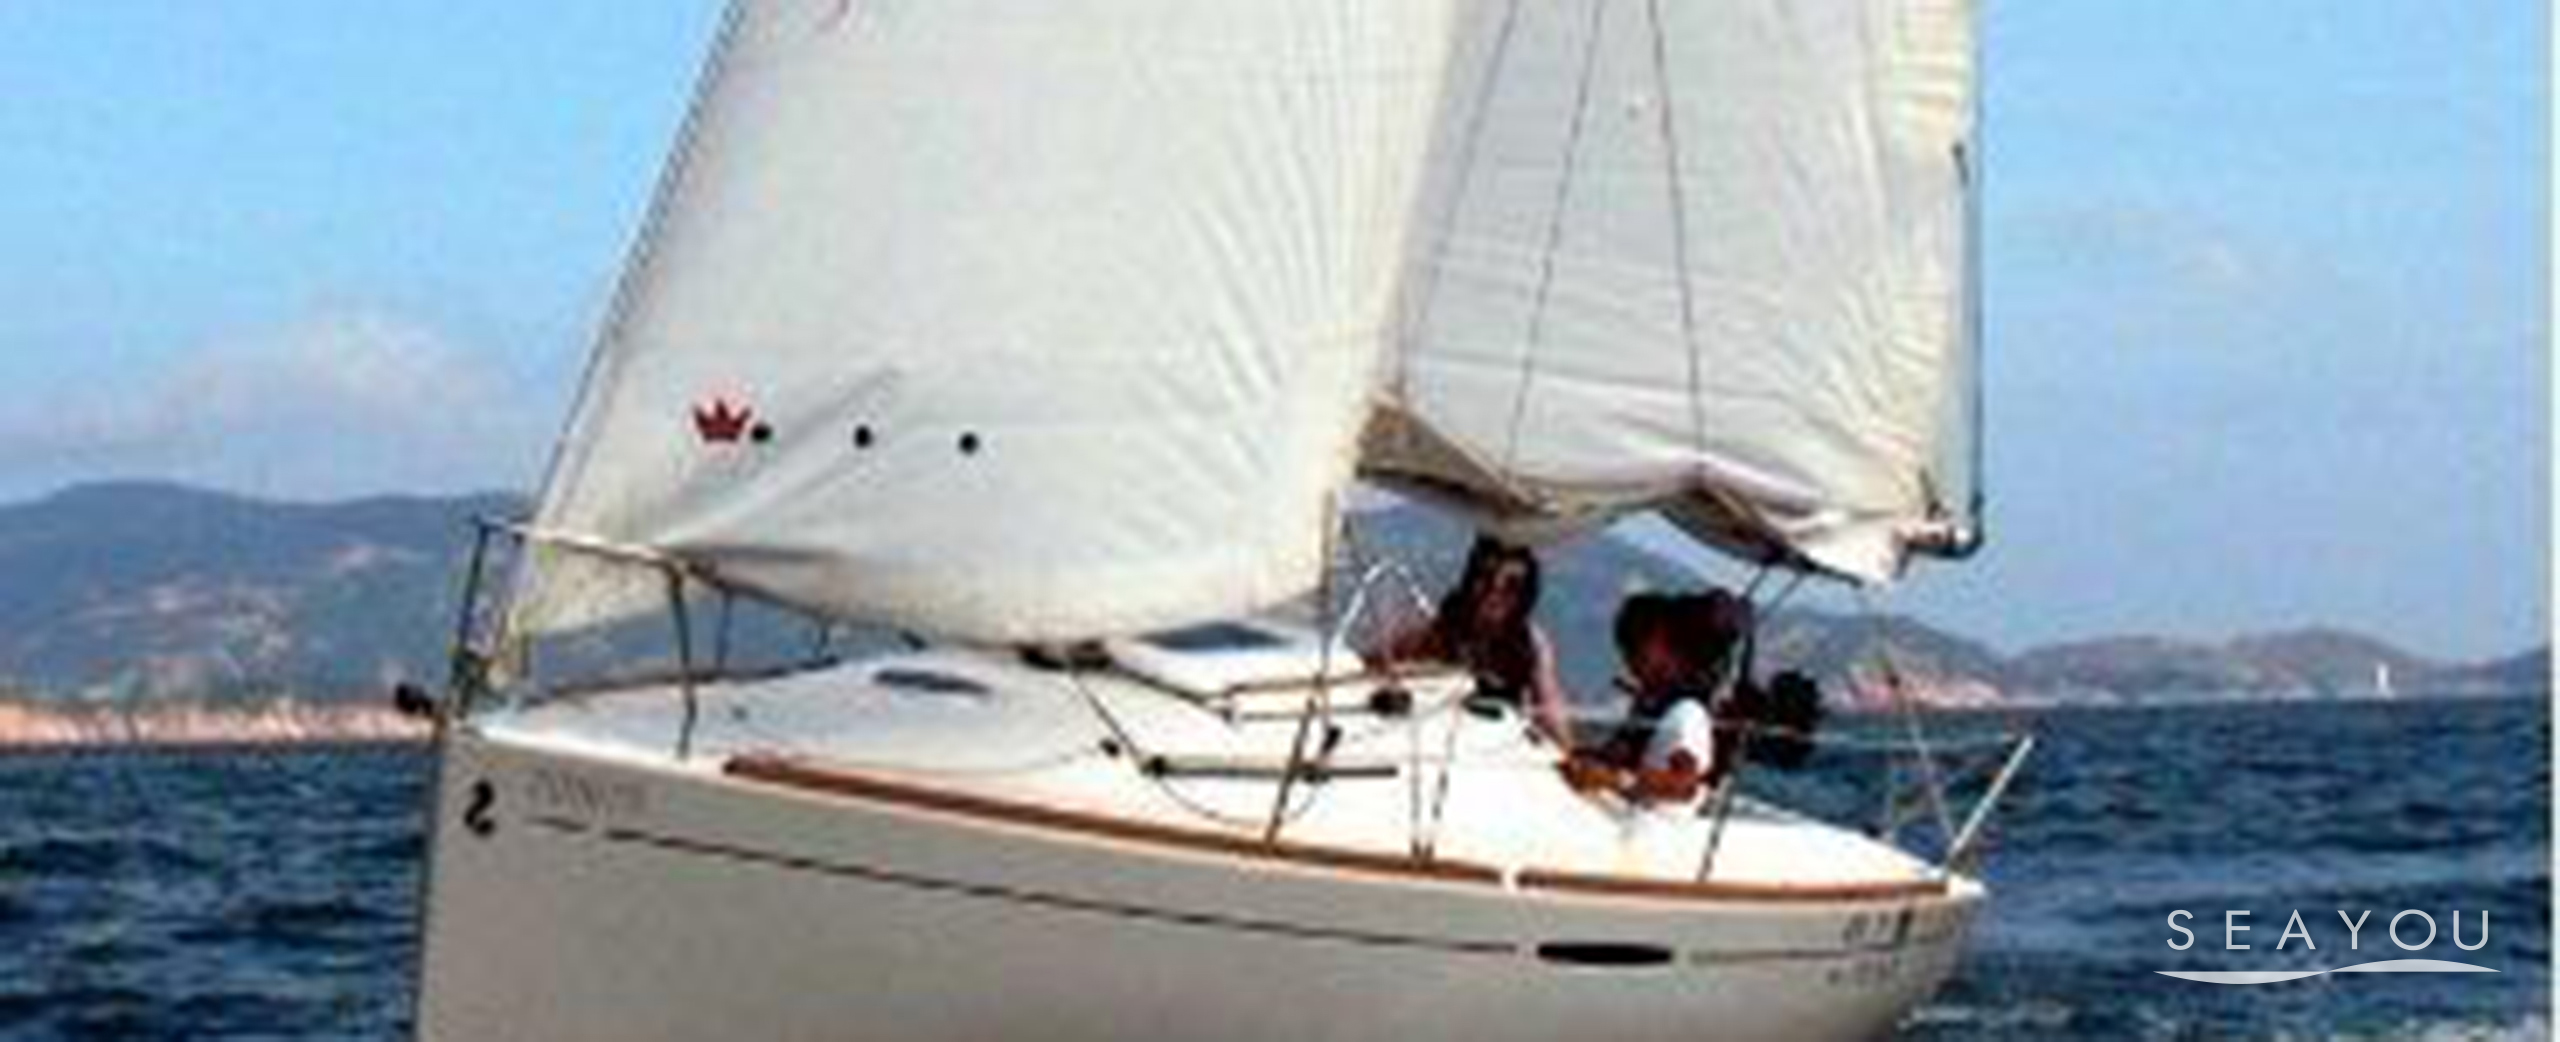 法國小帆船 Seayou 遊艇及海上活動預訂平台